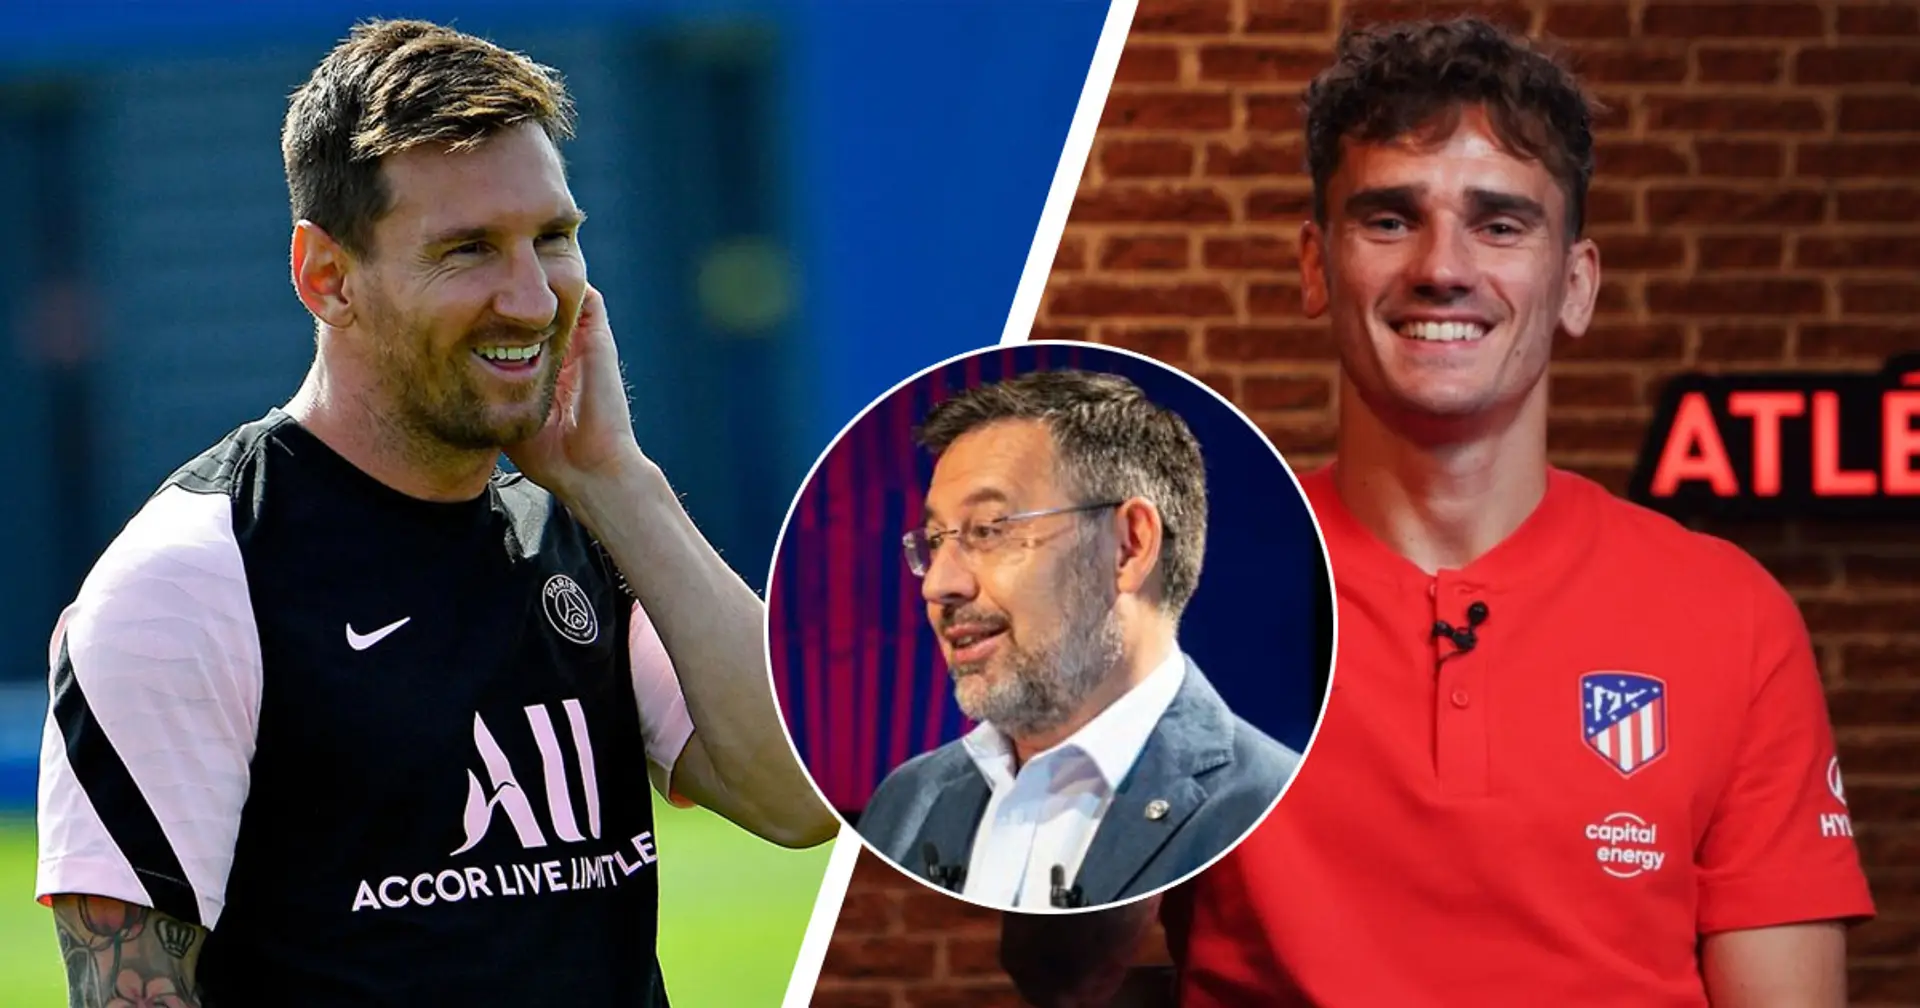 7 jugadores a los que Bartomeu llamó 'intocables' en 2020 - 3 se han ido del Barça